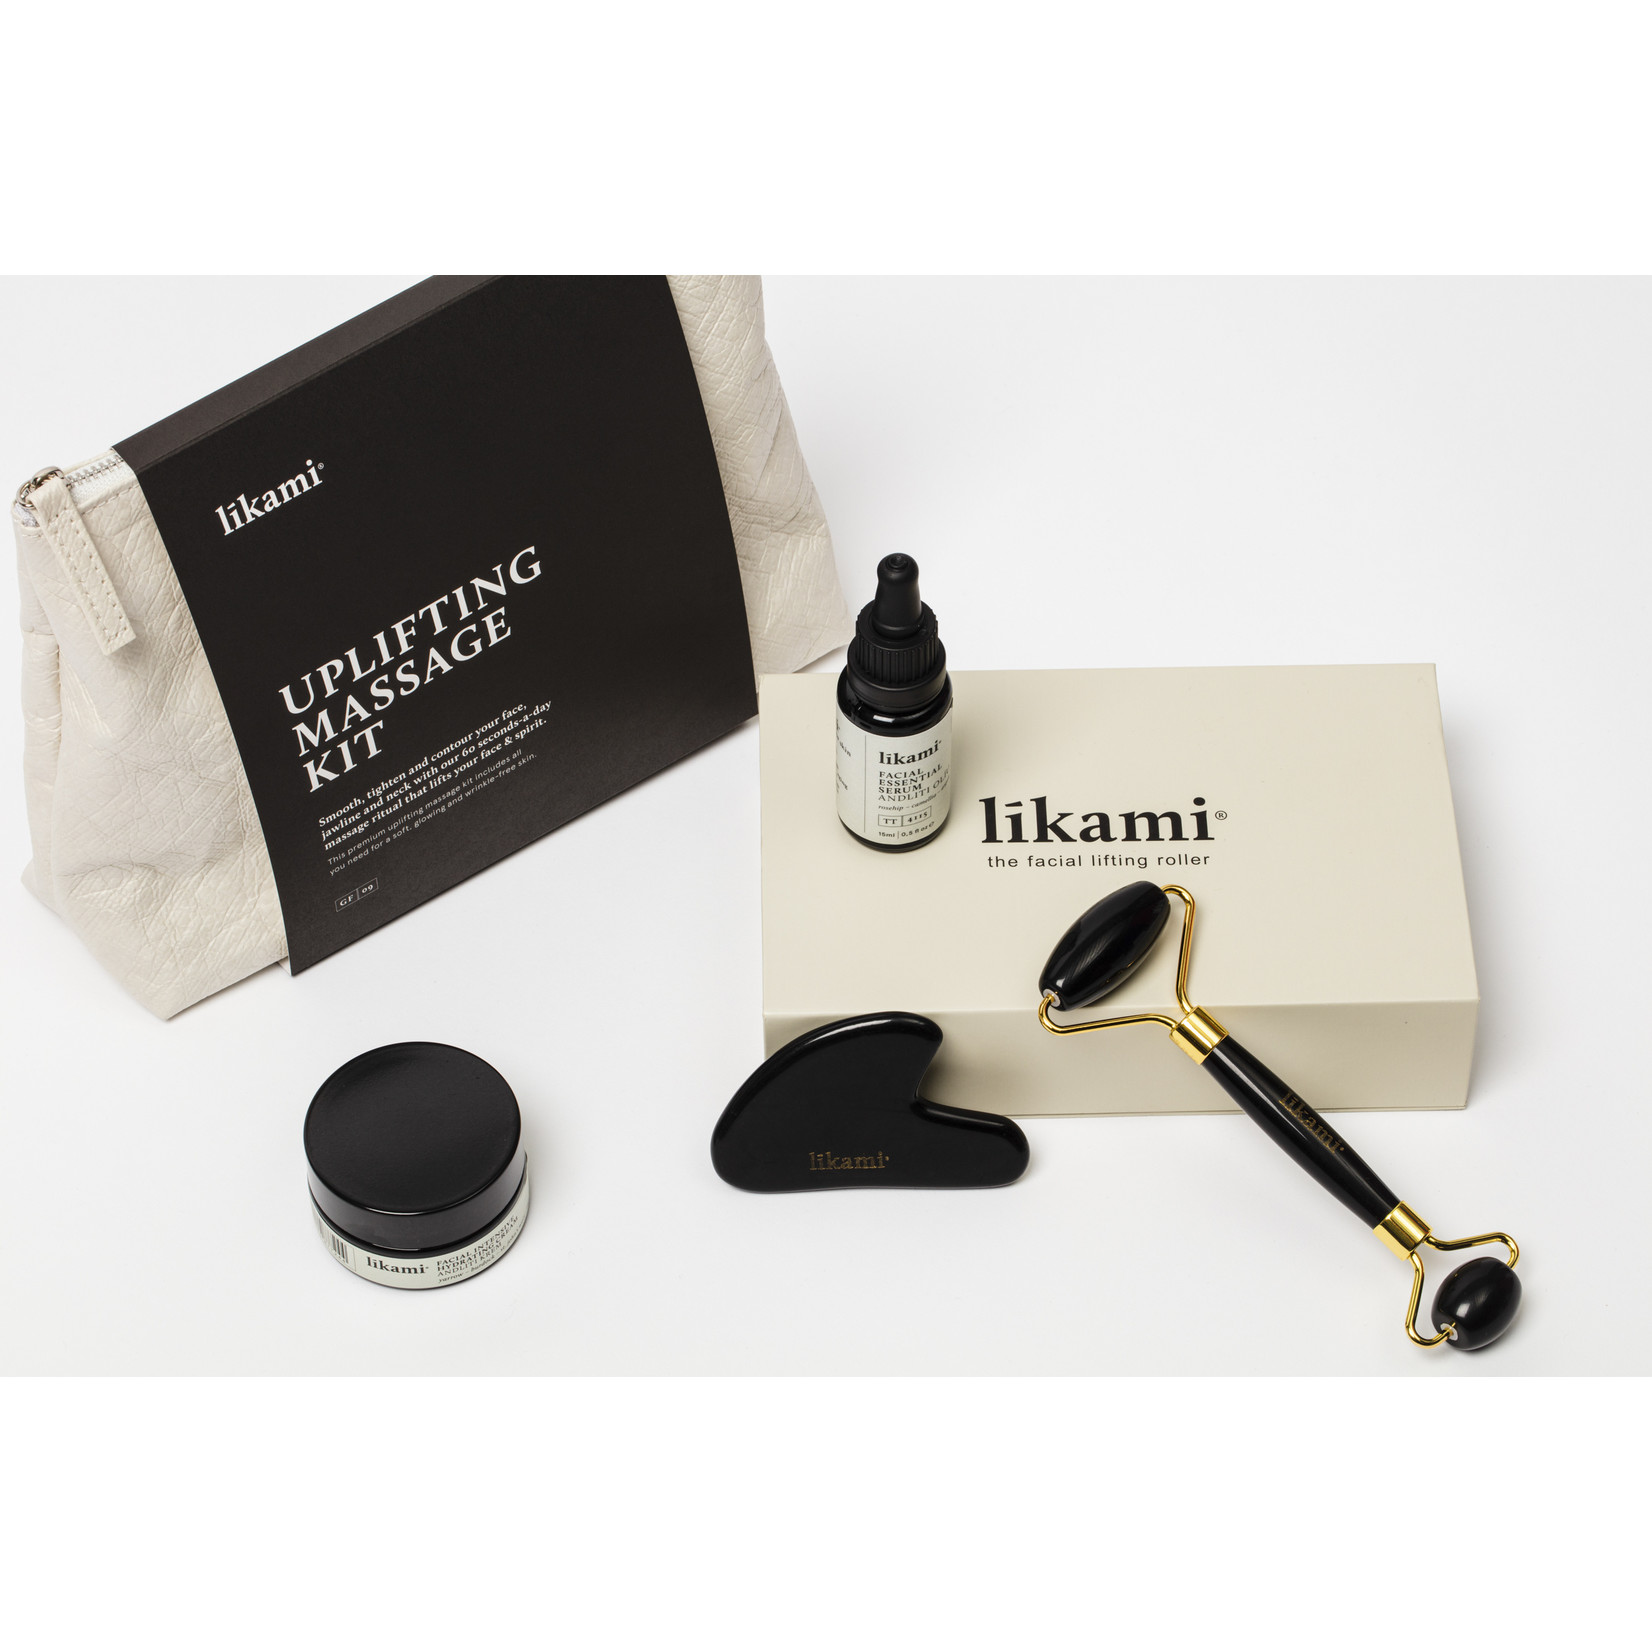 Lìkami Uplifting Massage Kit